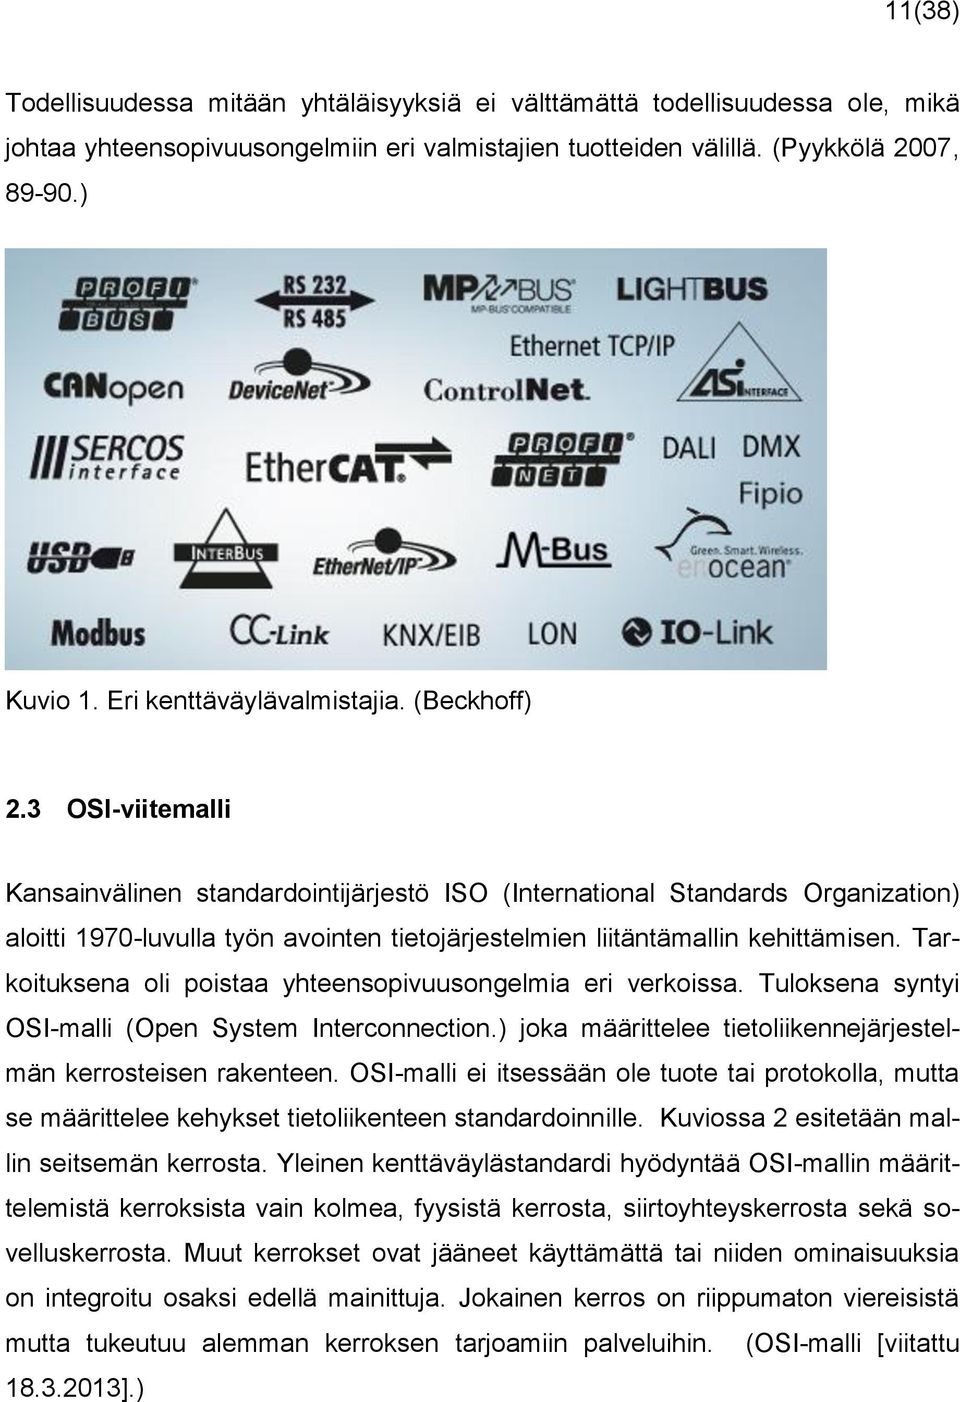 3 OSI-viitemalli Kansainvälinen standardointijärjestö ISO (International Standards Organization) aloitti 1970-luvulla työn avointen tietojärjestelmien liitäntämallin kehittämisen.